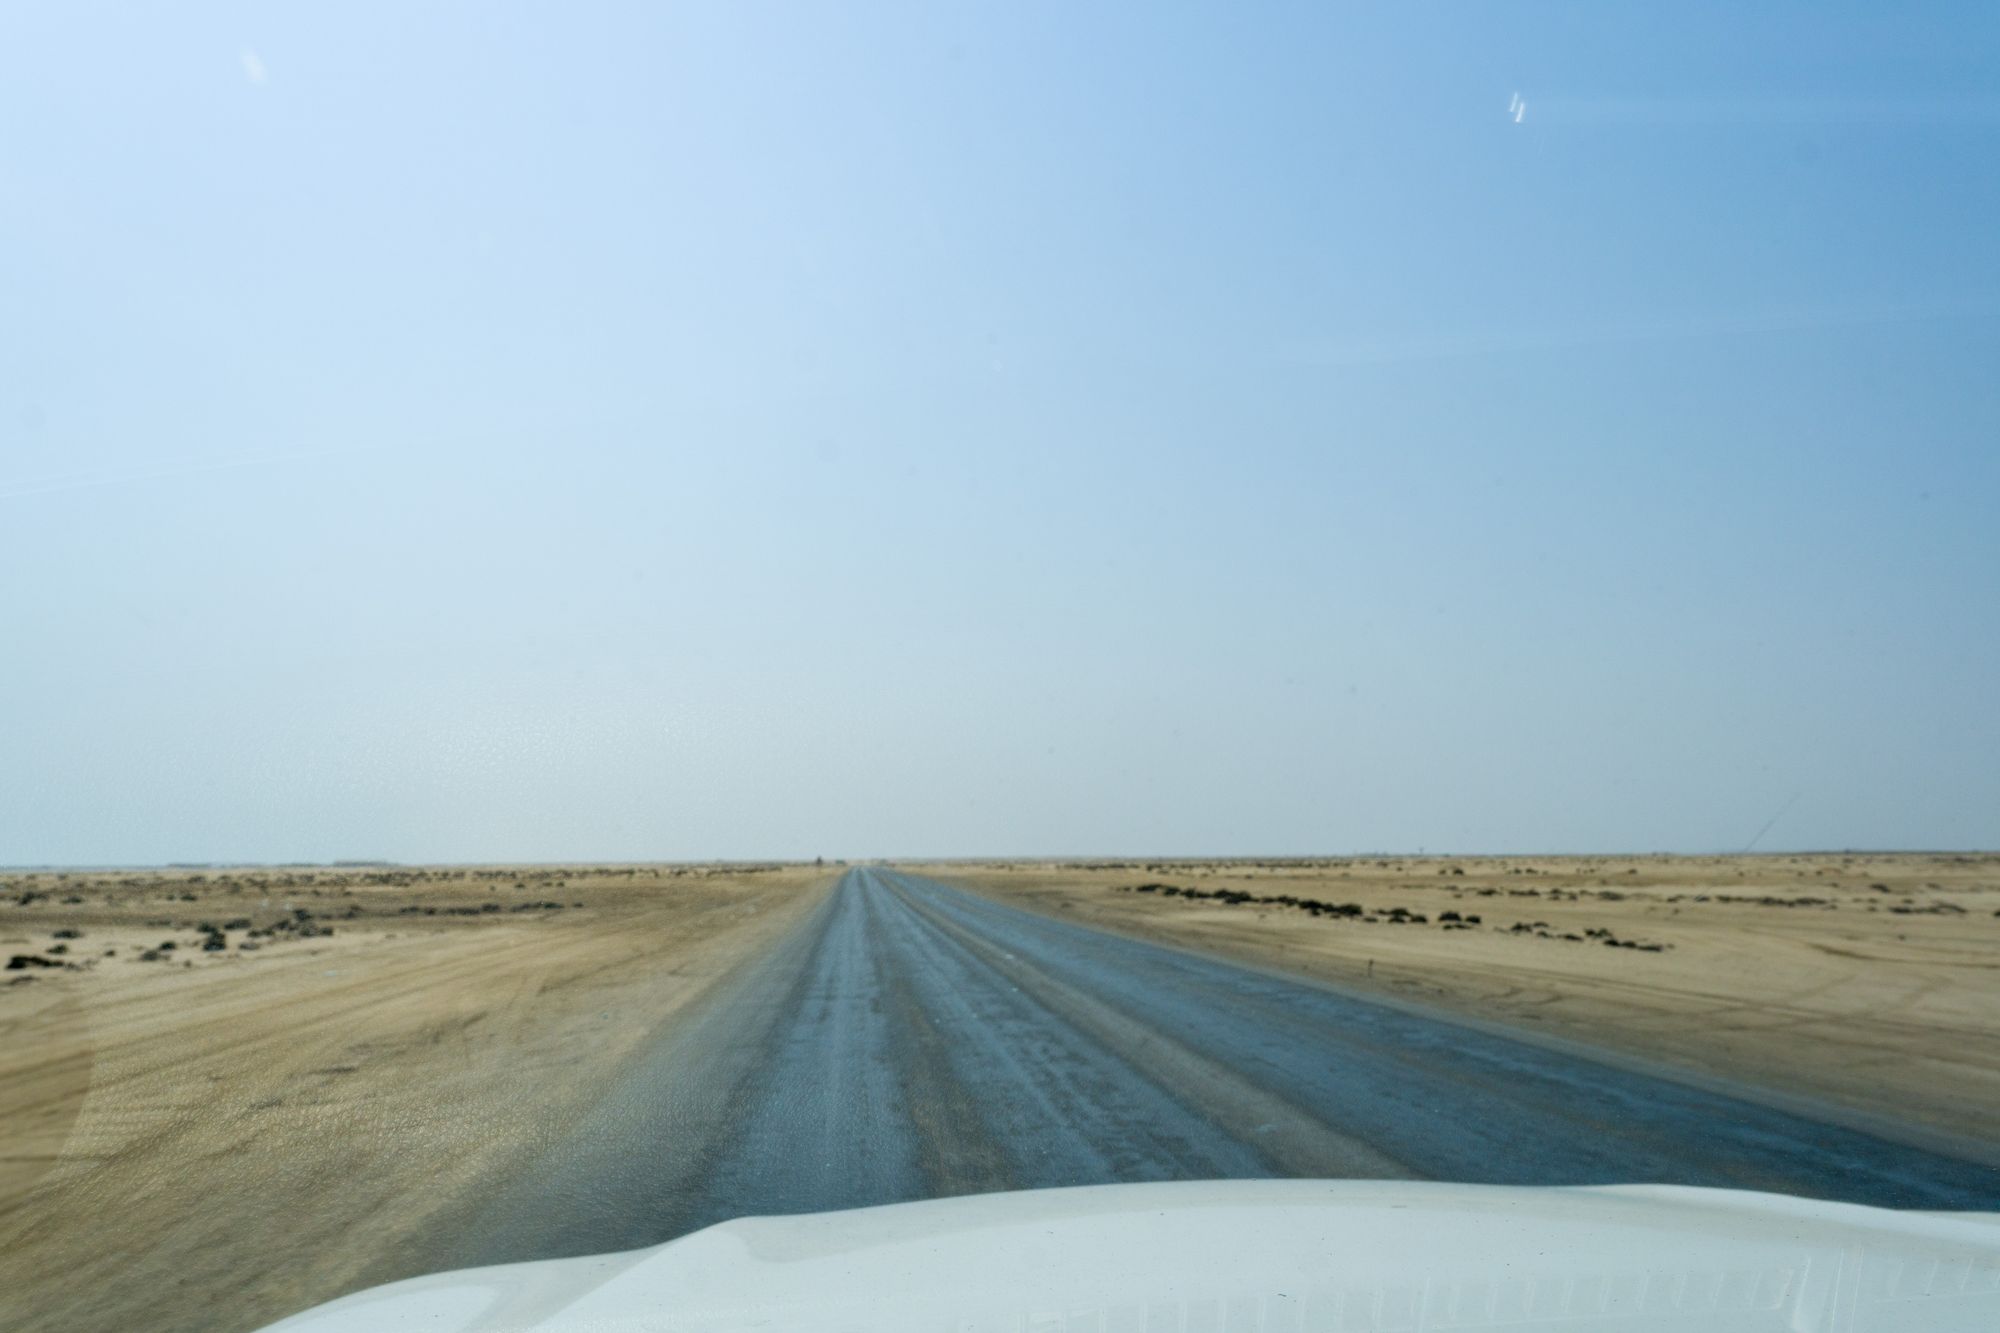 Day 7: The Desert near Swakopmund